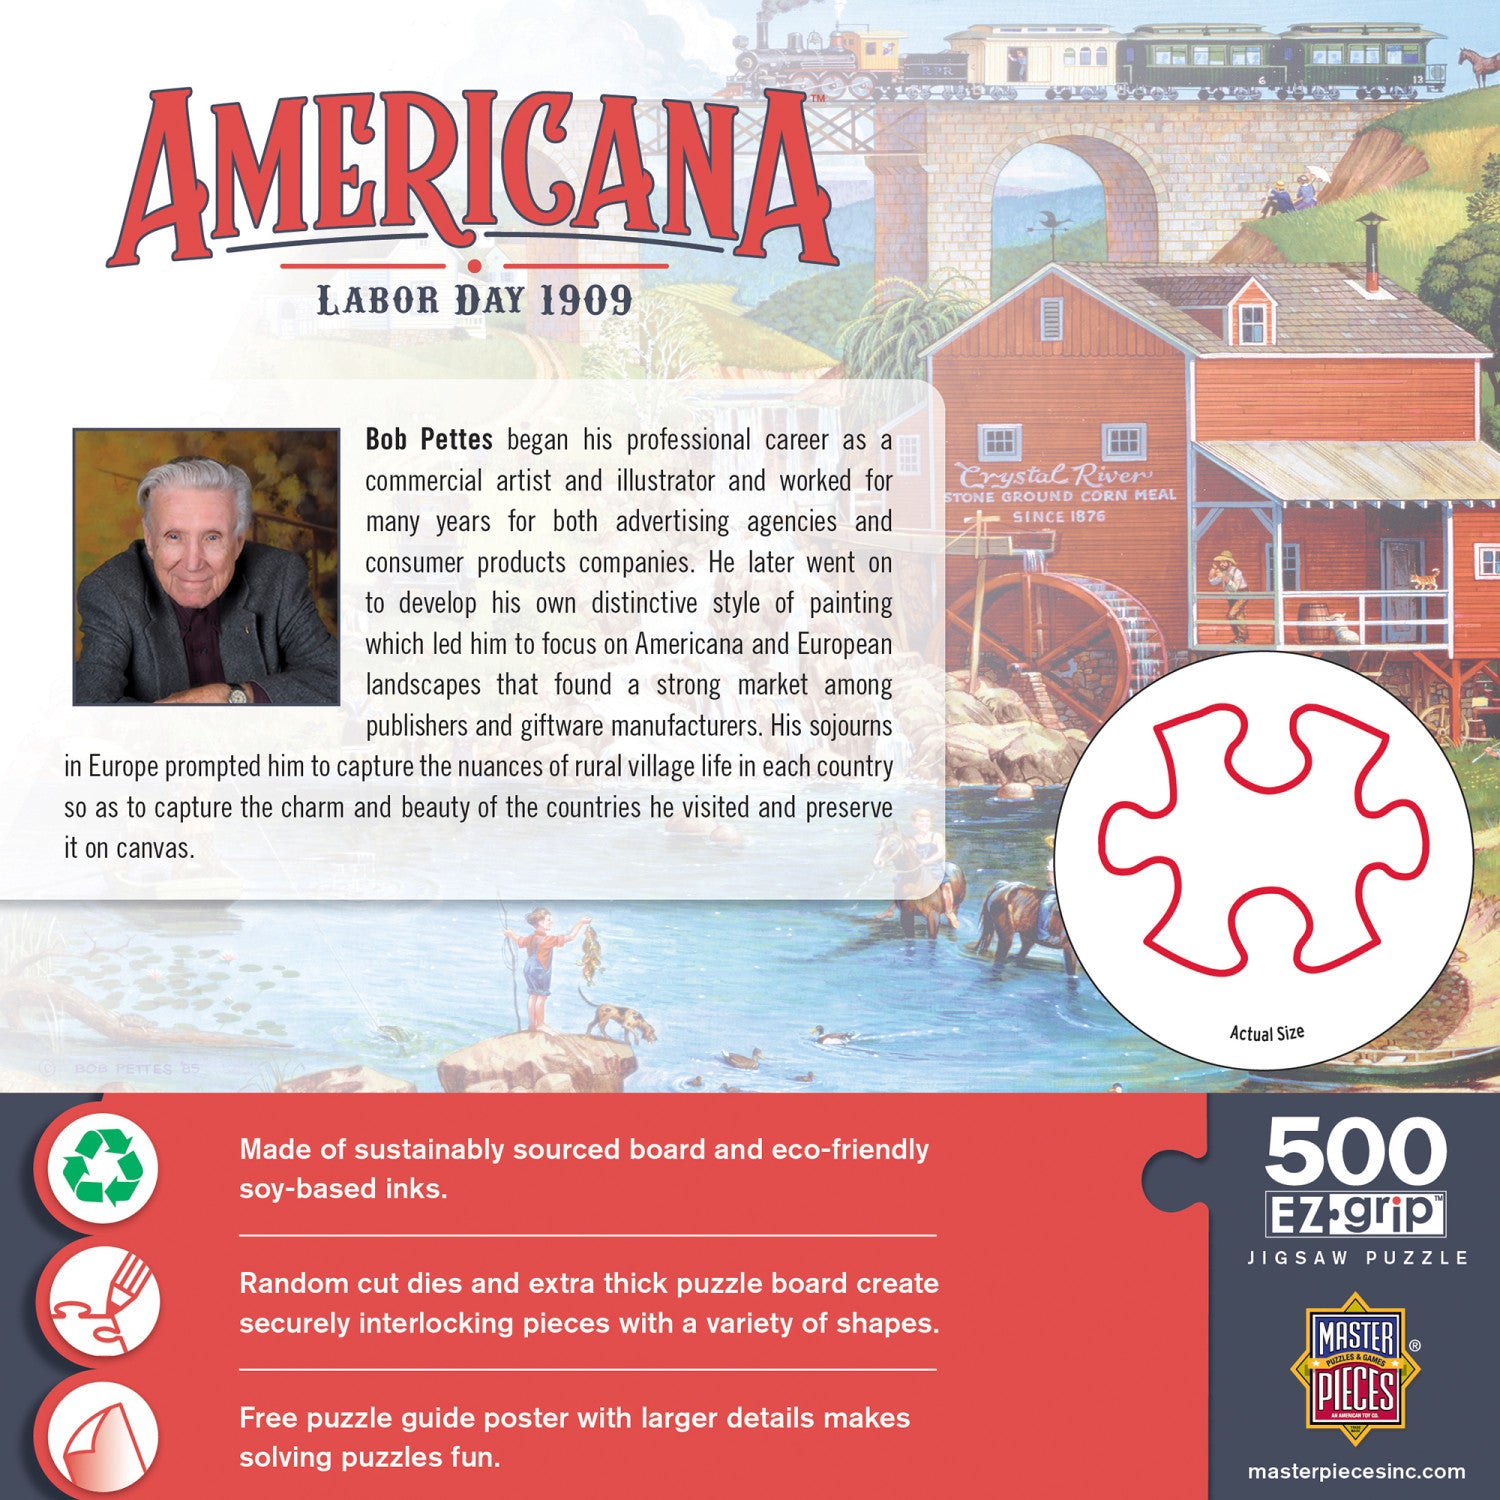 Americana - Labor Day 1909 500 Piece EZ Grip Jigsaw Puzzle